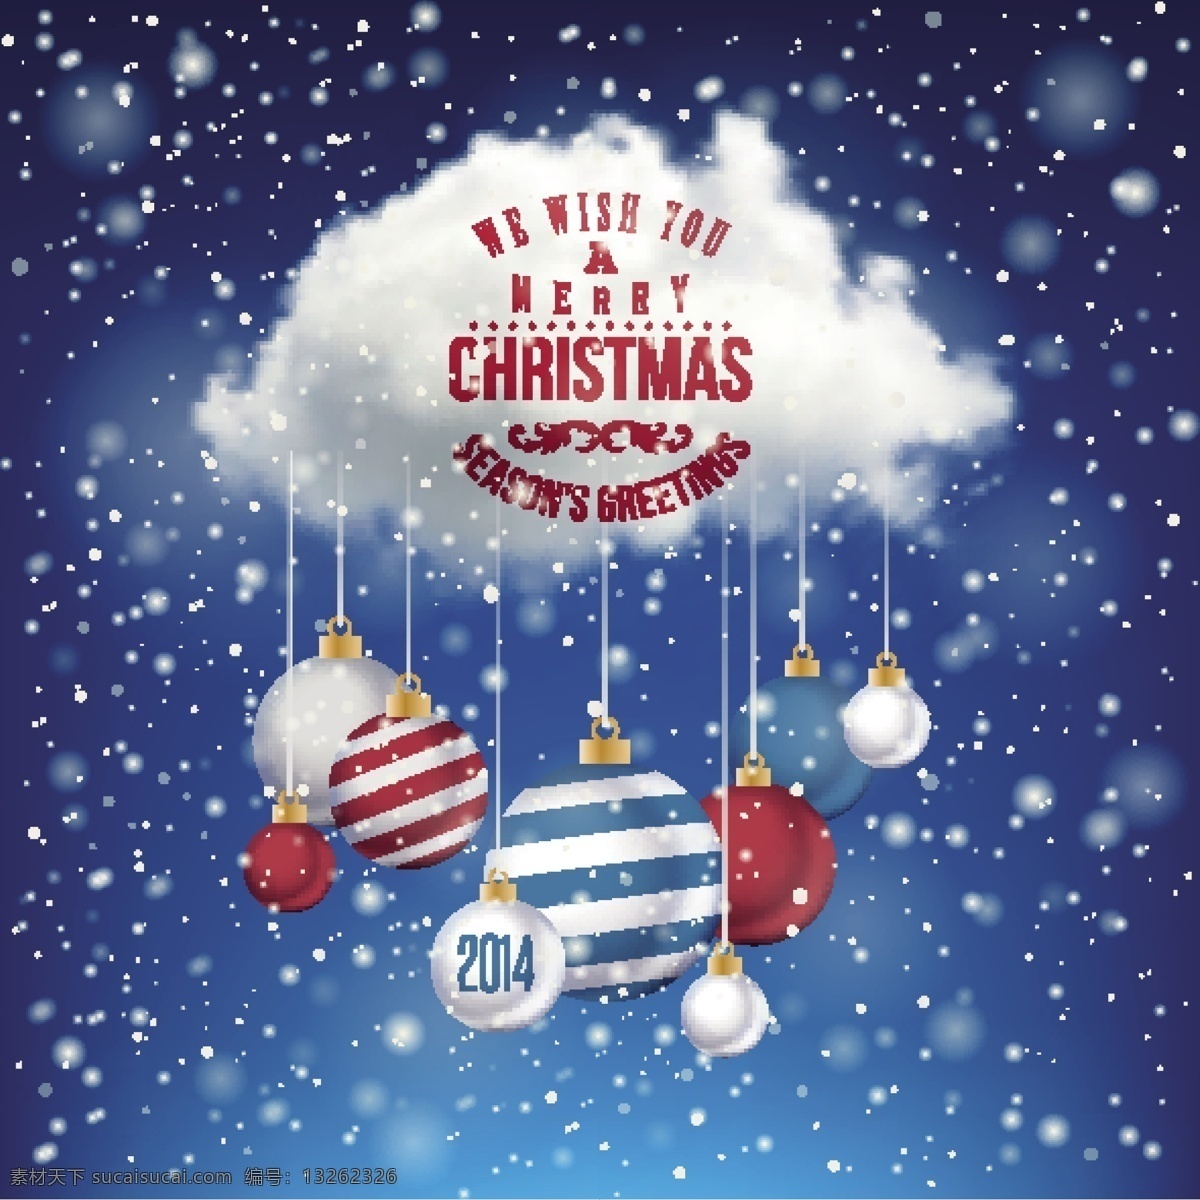 2014 云朵 圣诞 吊球 白云 插画 圣诞吊球 圣诞节 雪花 装饰 海报 矢量 charles119 其他海报设计